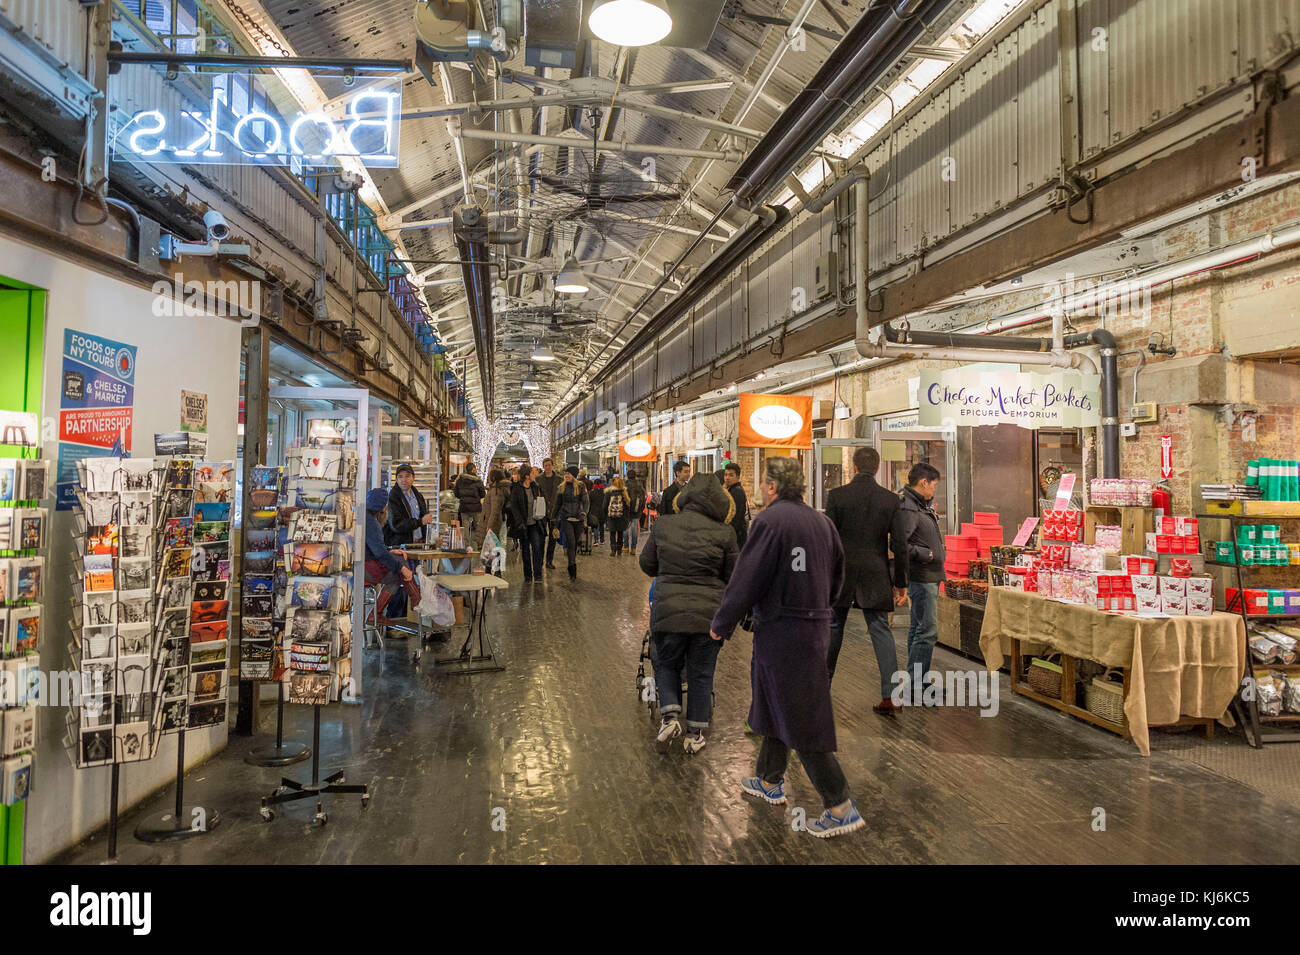 USA, New York City: Chelsea Market Stock Photo